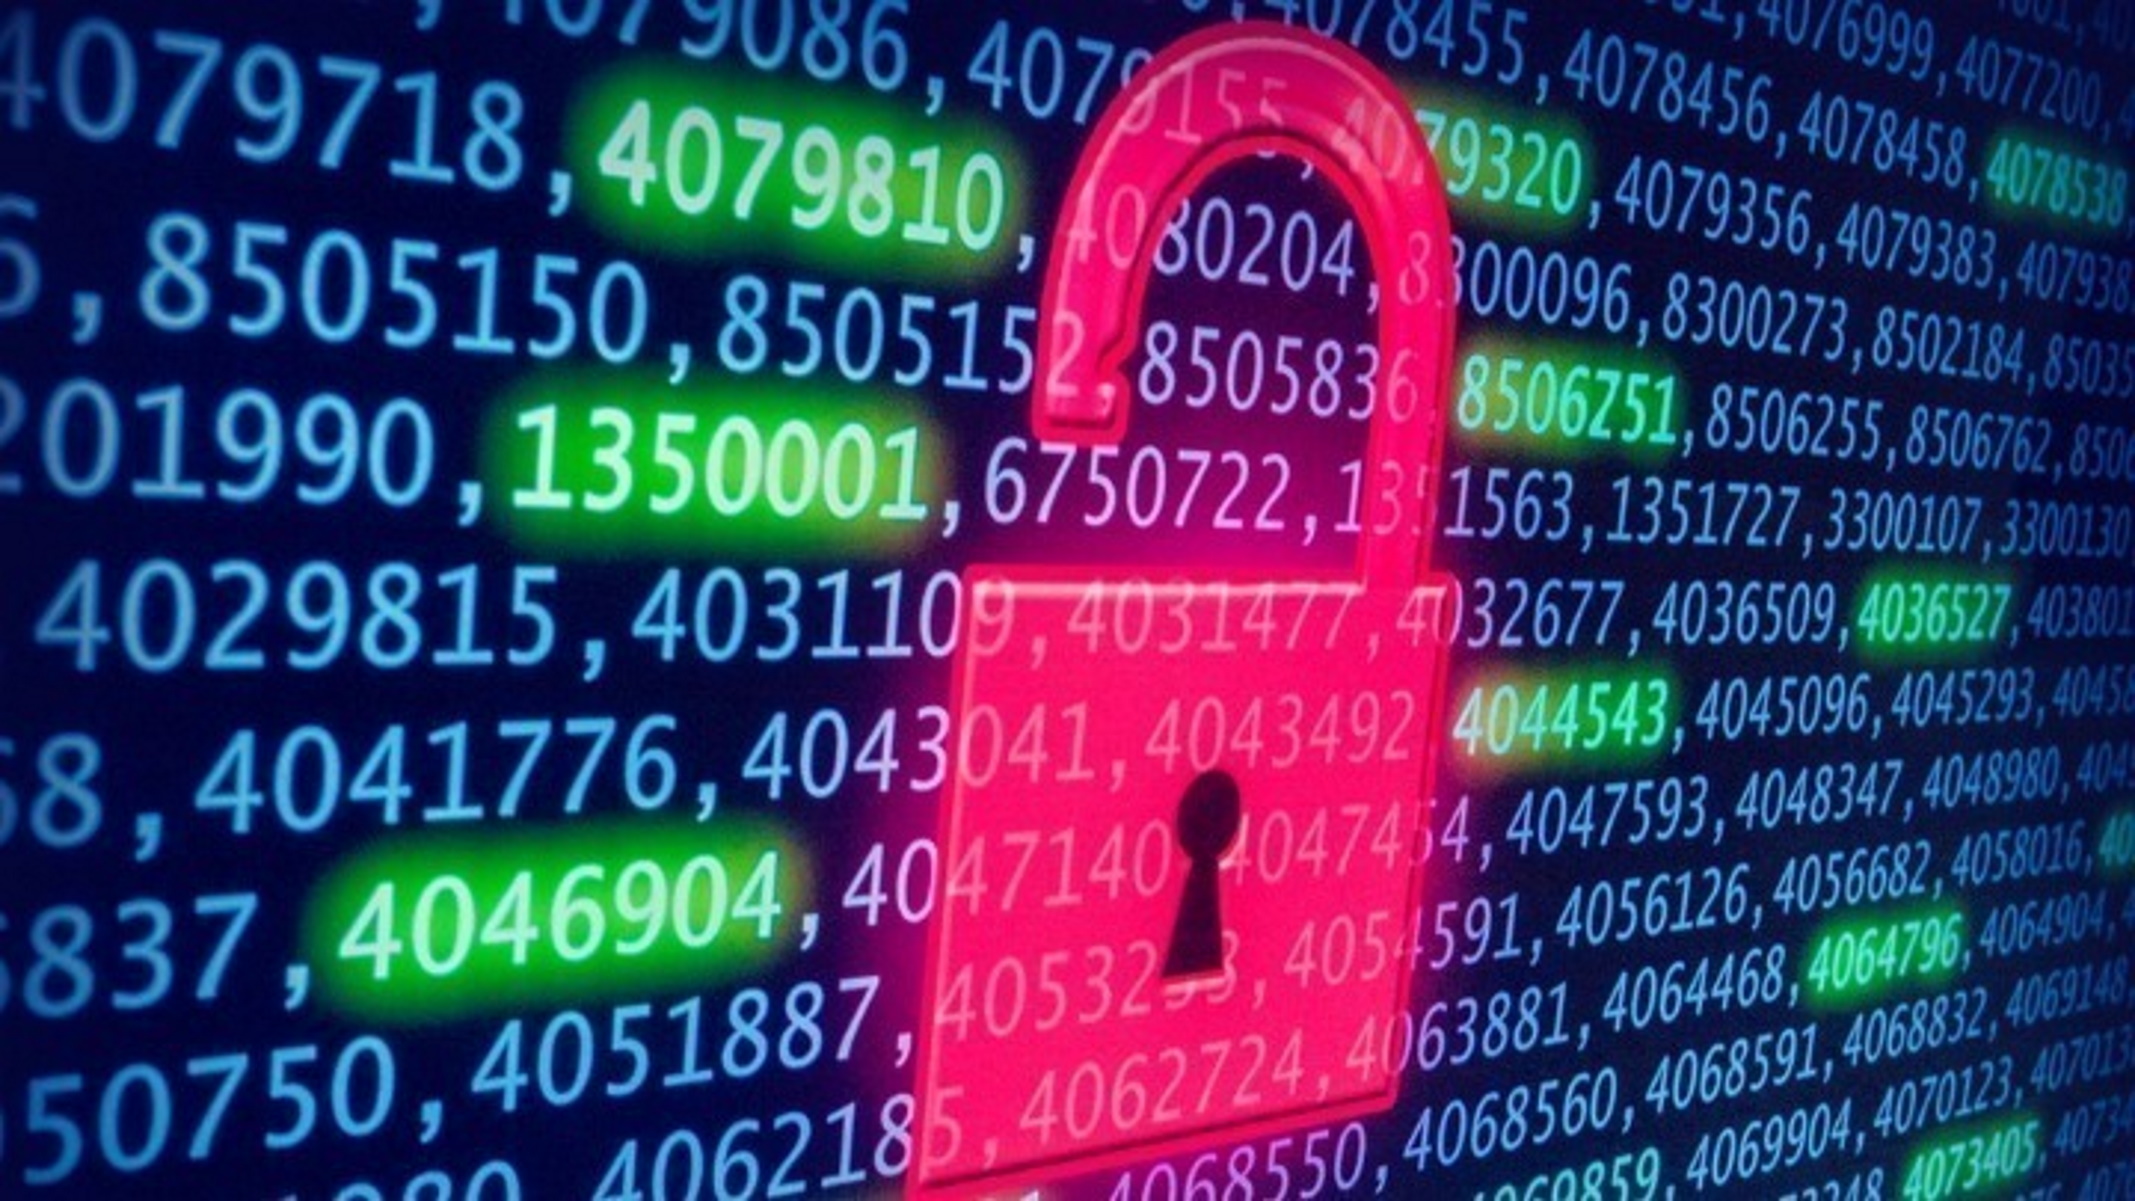 Με αυτούς τους πέντε τρόπους οι χάκερς κλέβουν τους κωδικούς μας – Πώς θα τους σταματήσετε